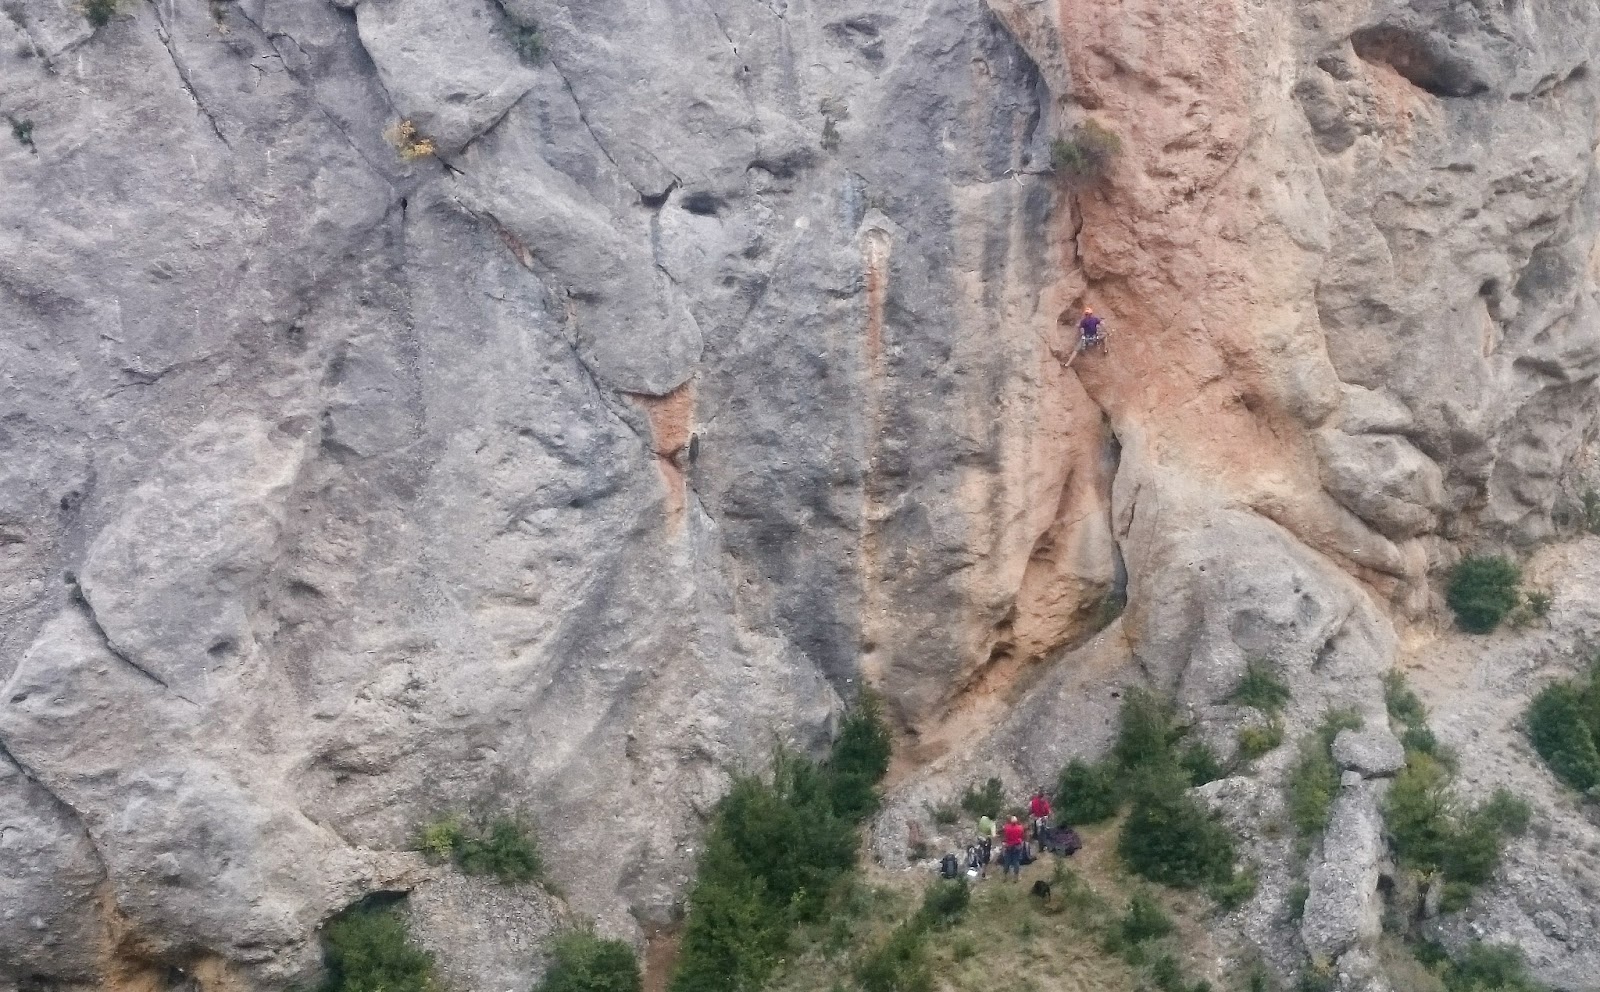 escalada deportiva en Calcena, zaragoza